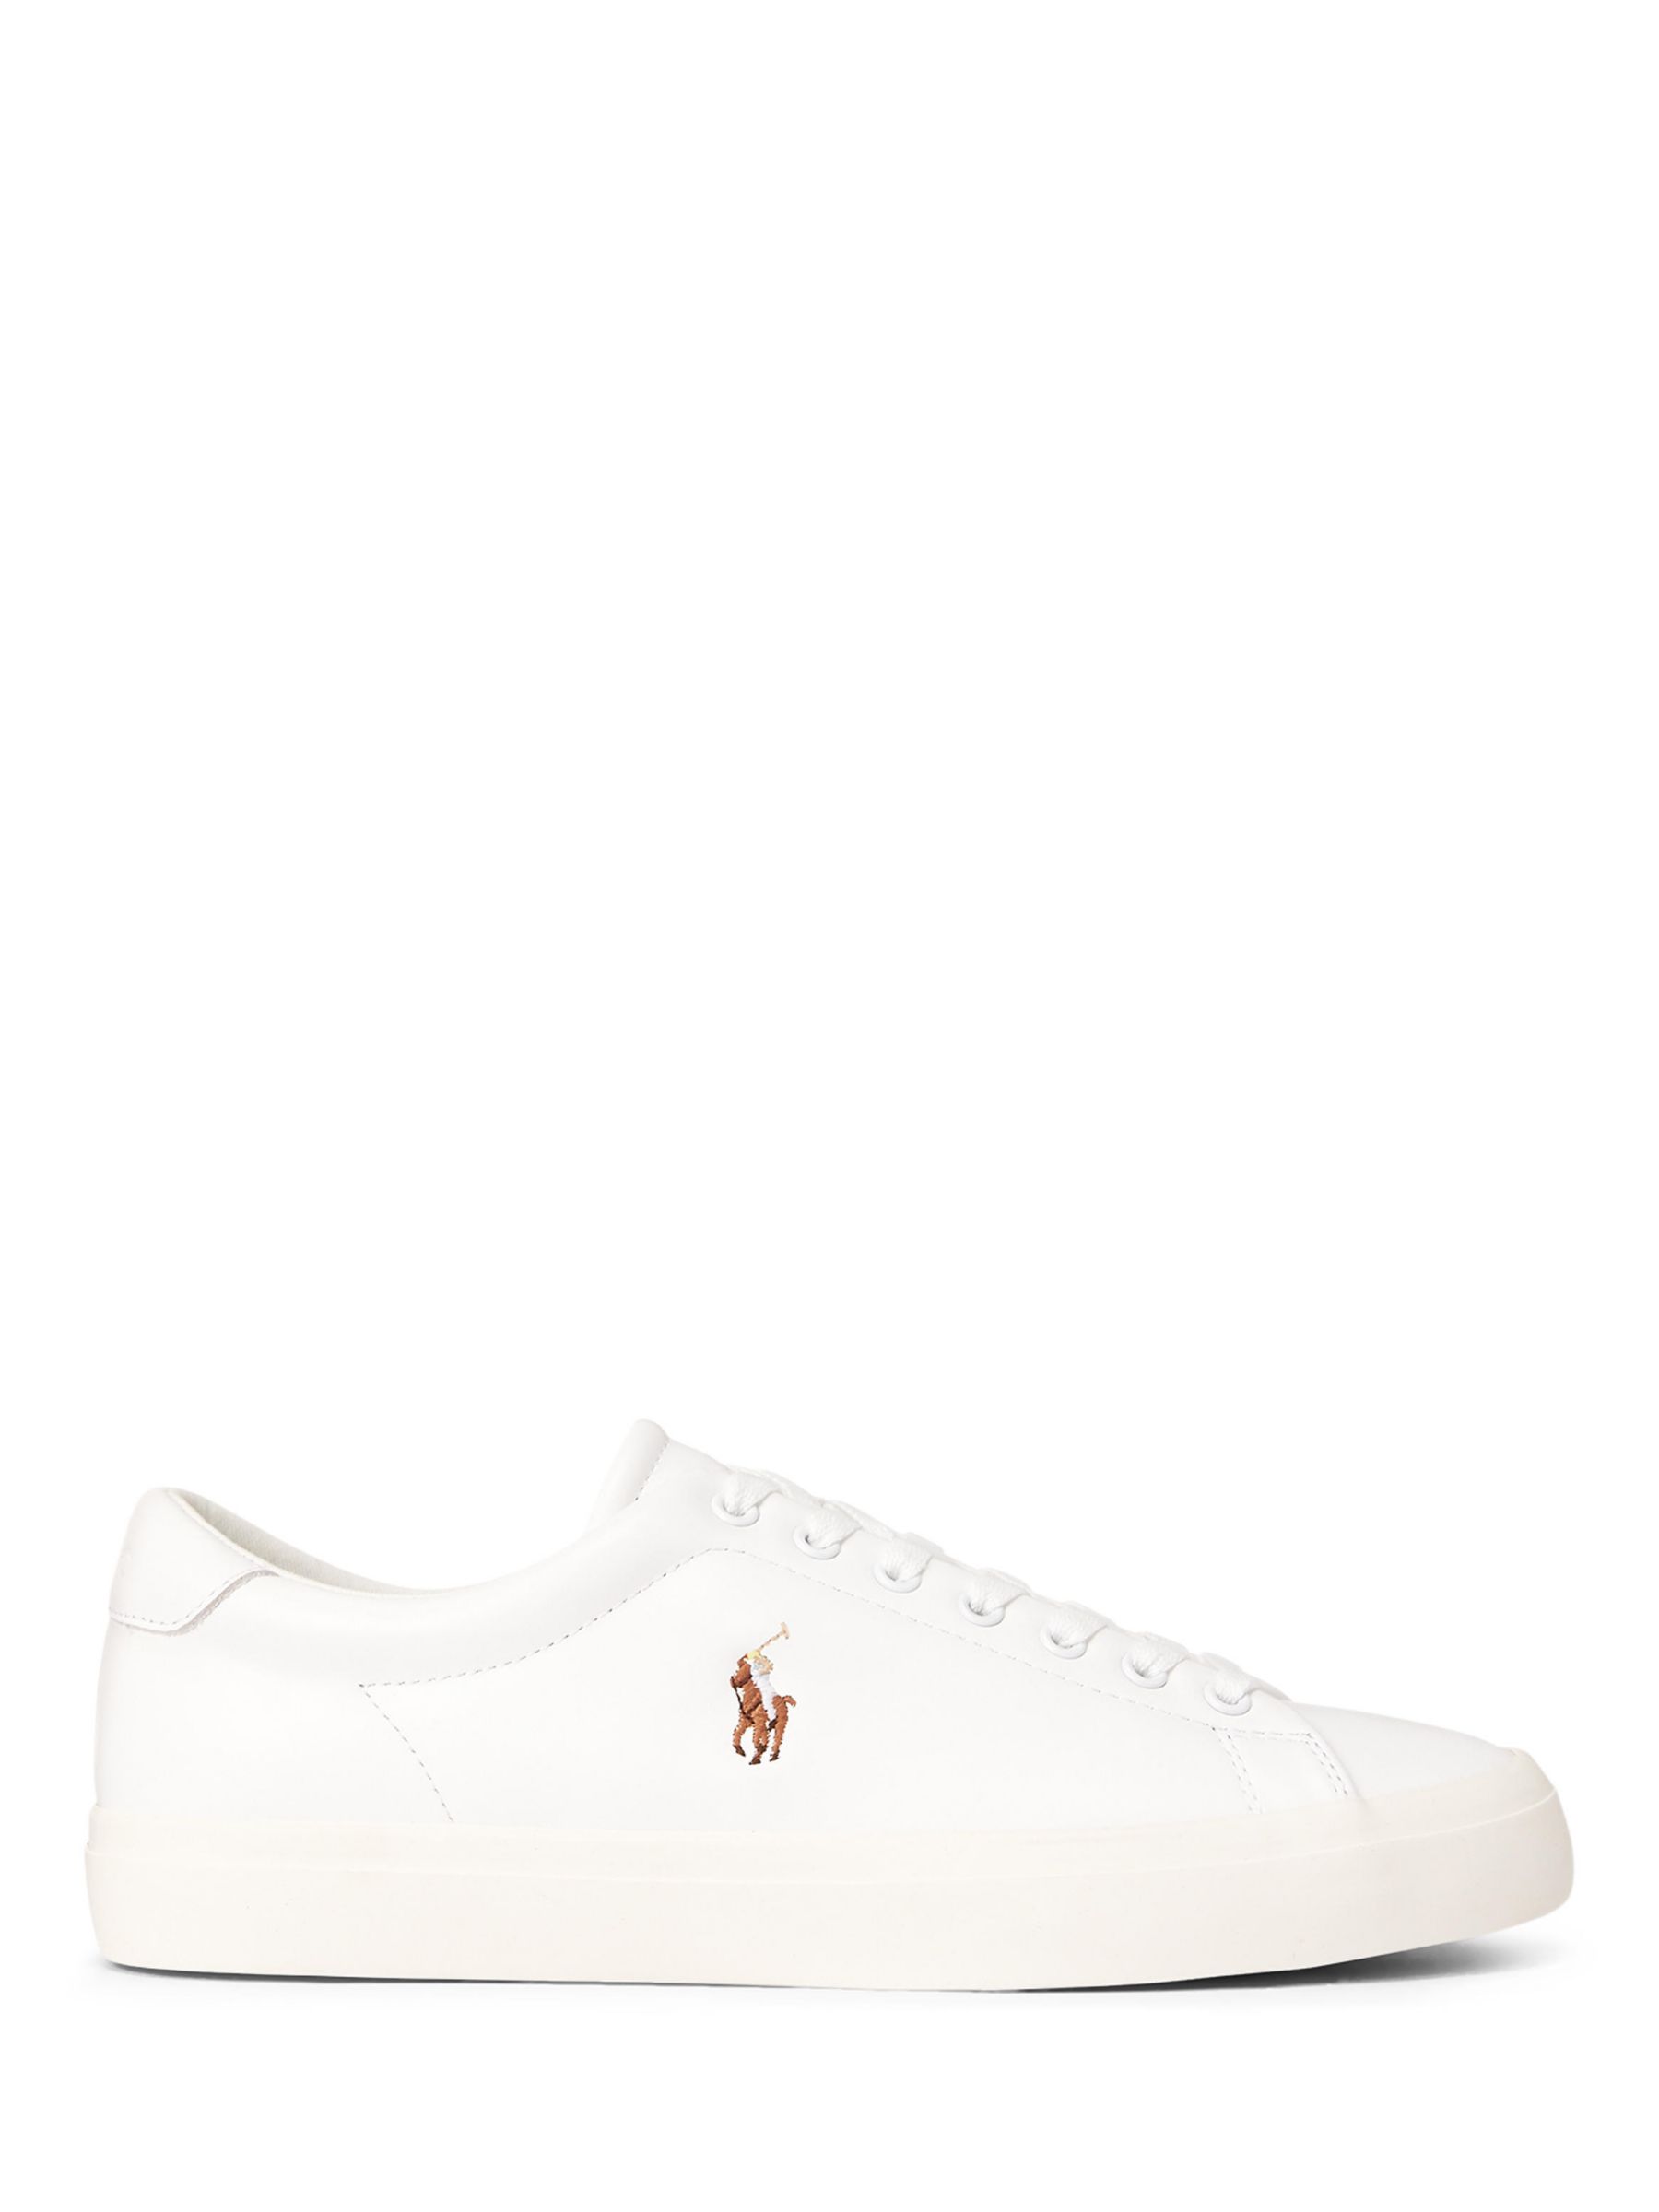 Кожаные кроссовки Polo Longwood Ralph Lauren, белый кроссовки polo ralph lauren longwood lace unisex белый